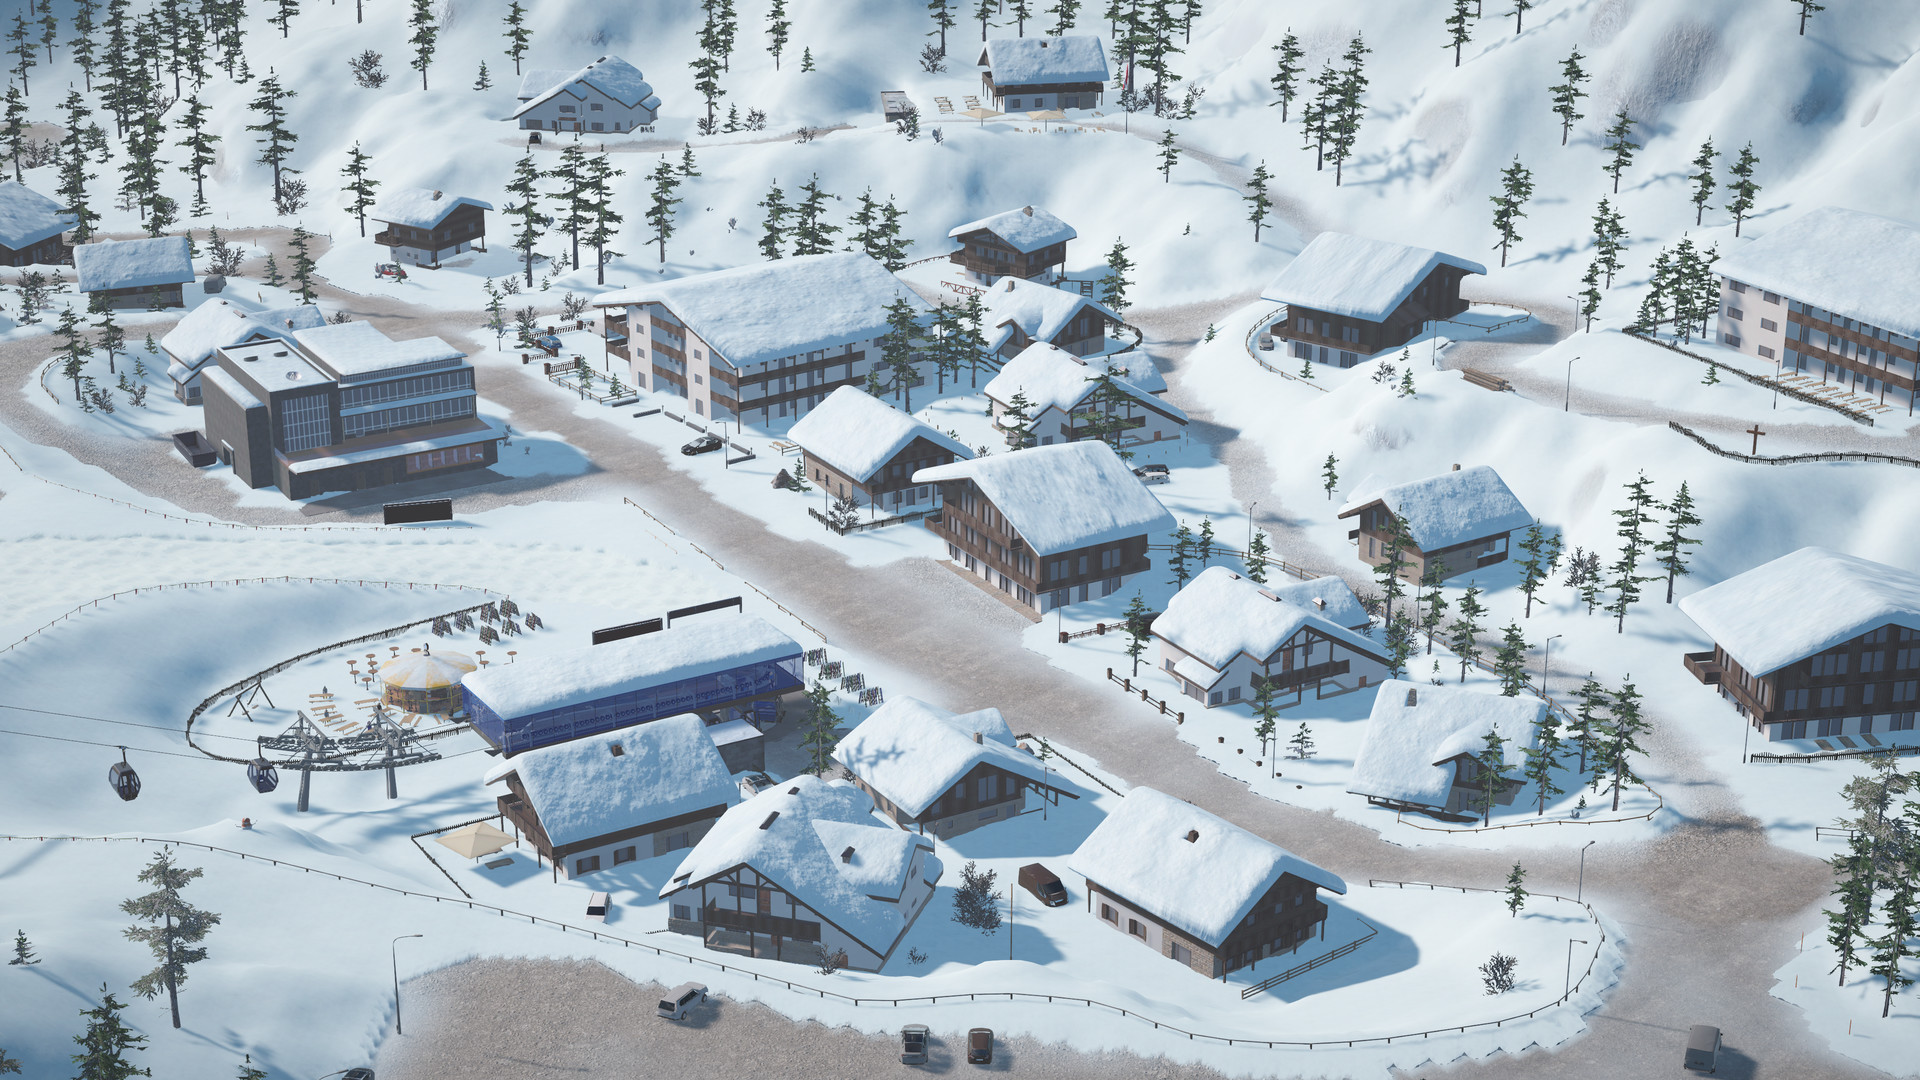 Winter Resort Simulator 2 Free Download